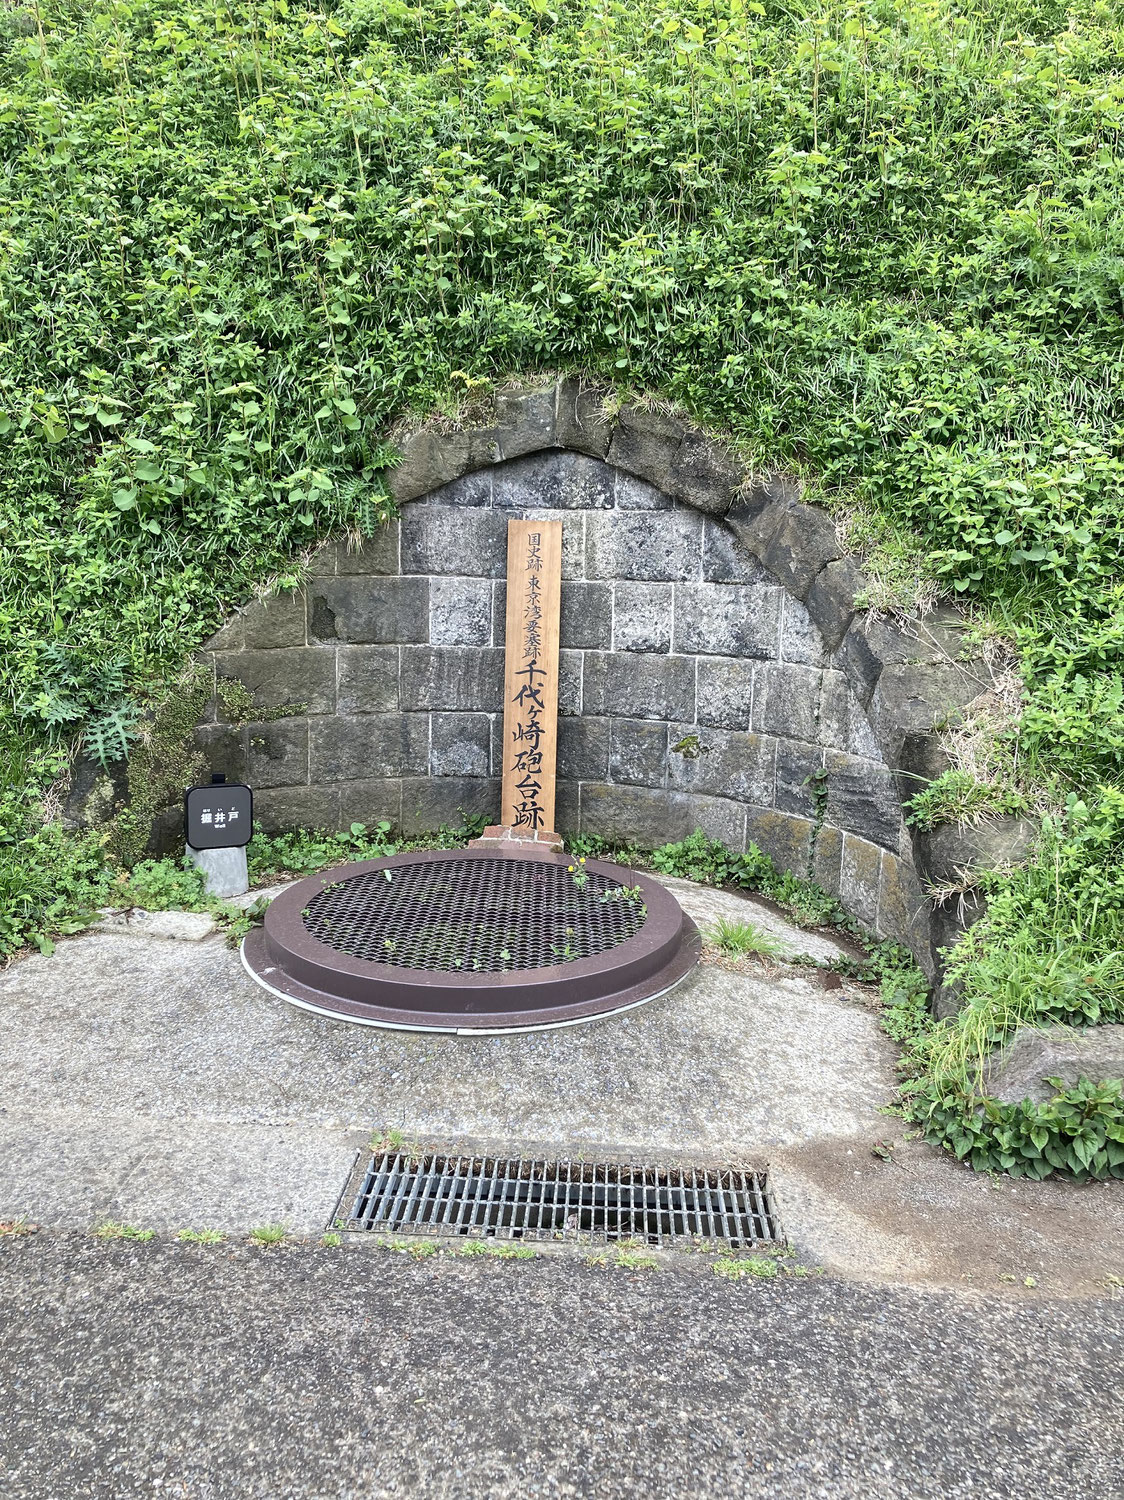 千代ヶ崎砲台跡でのガイドツアーについて